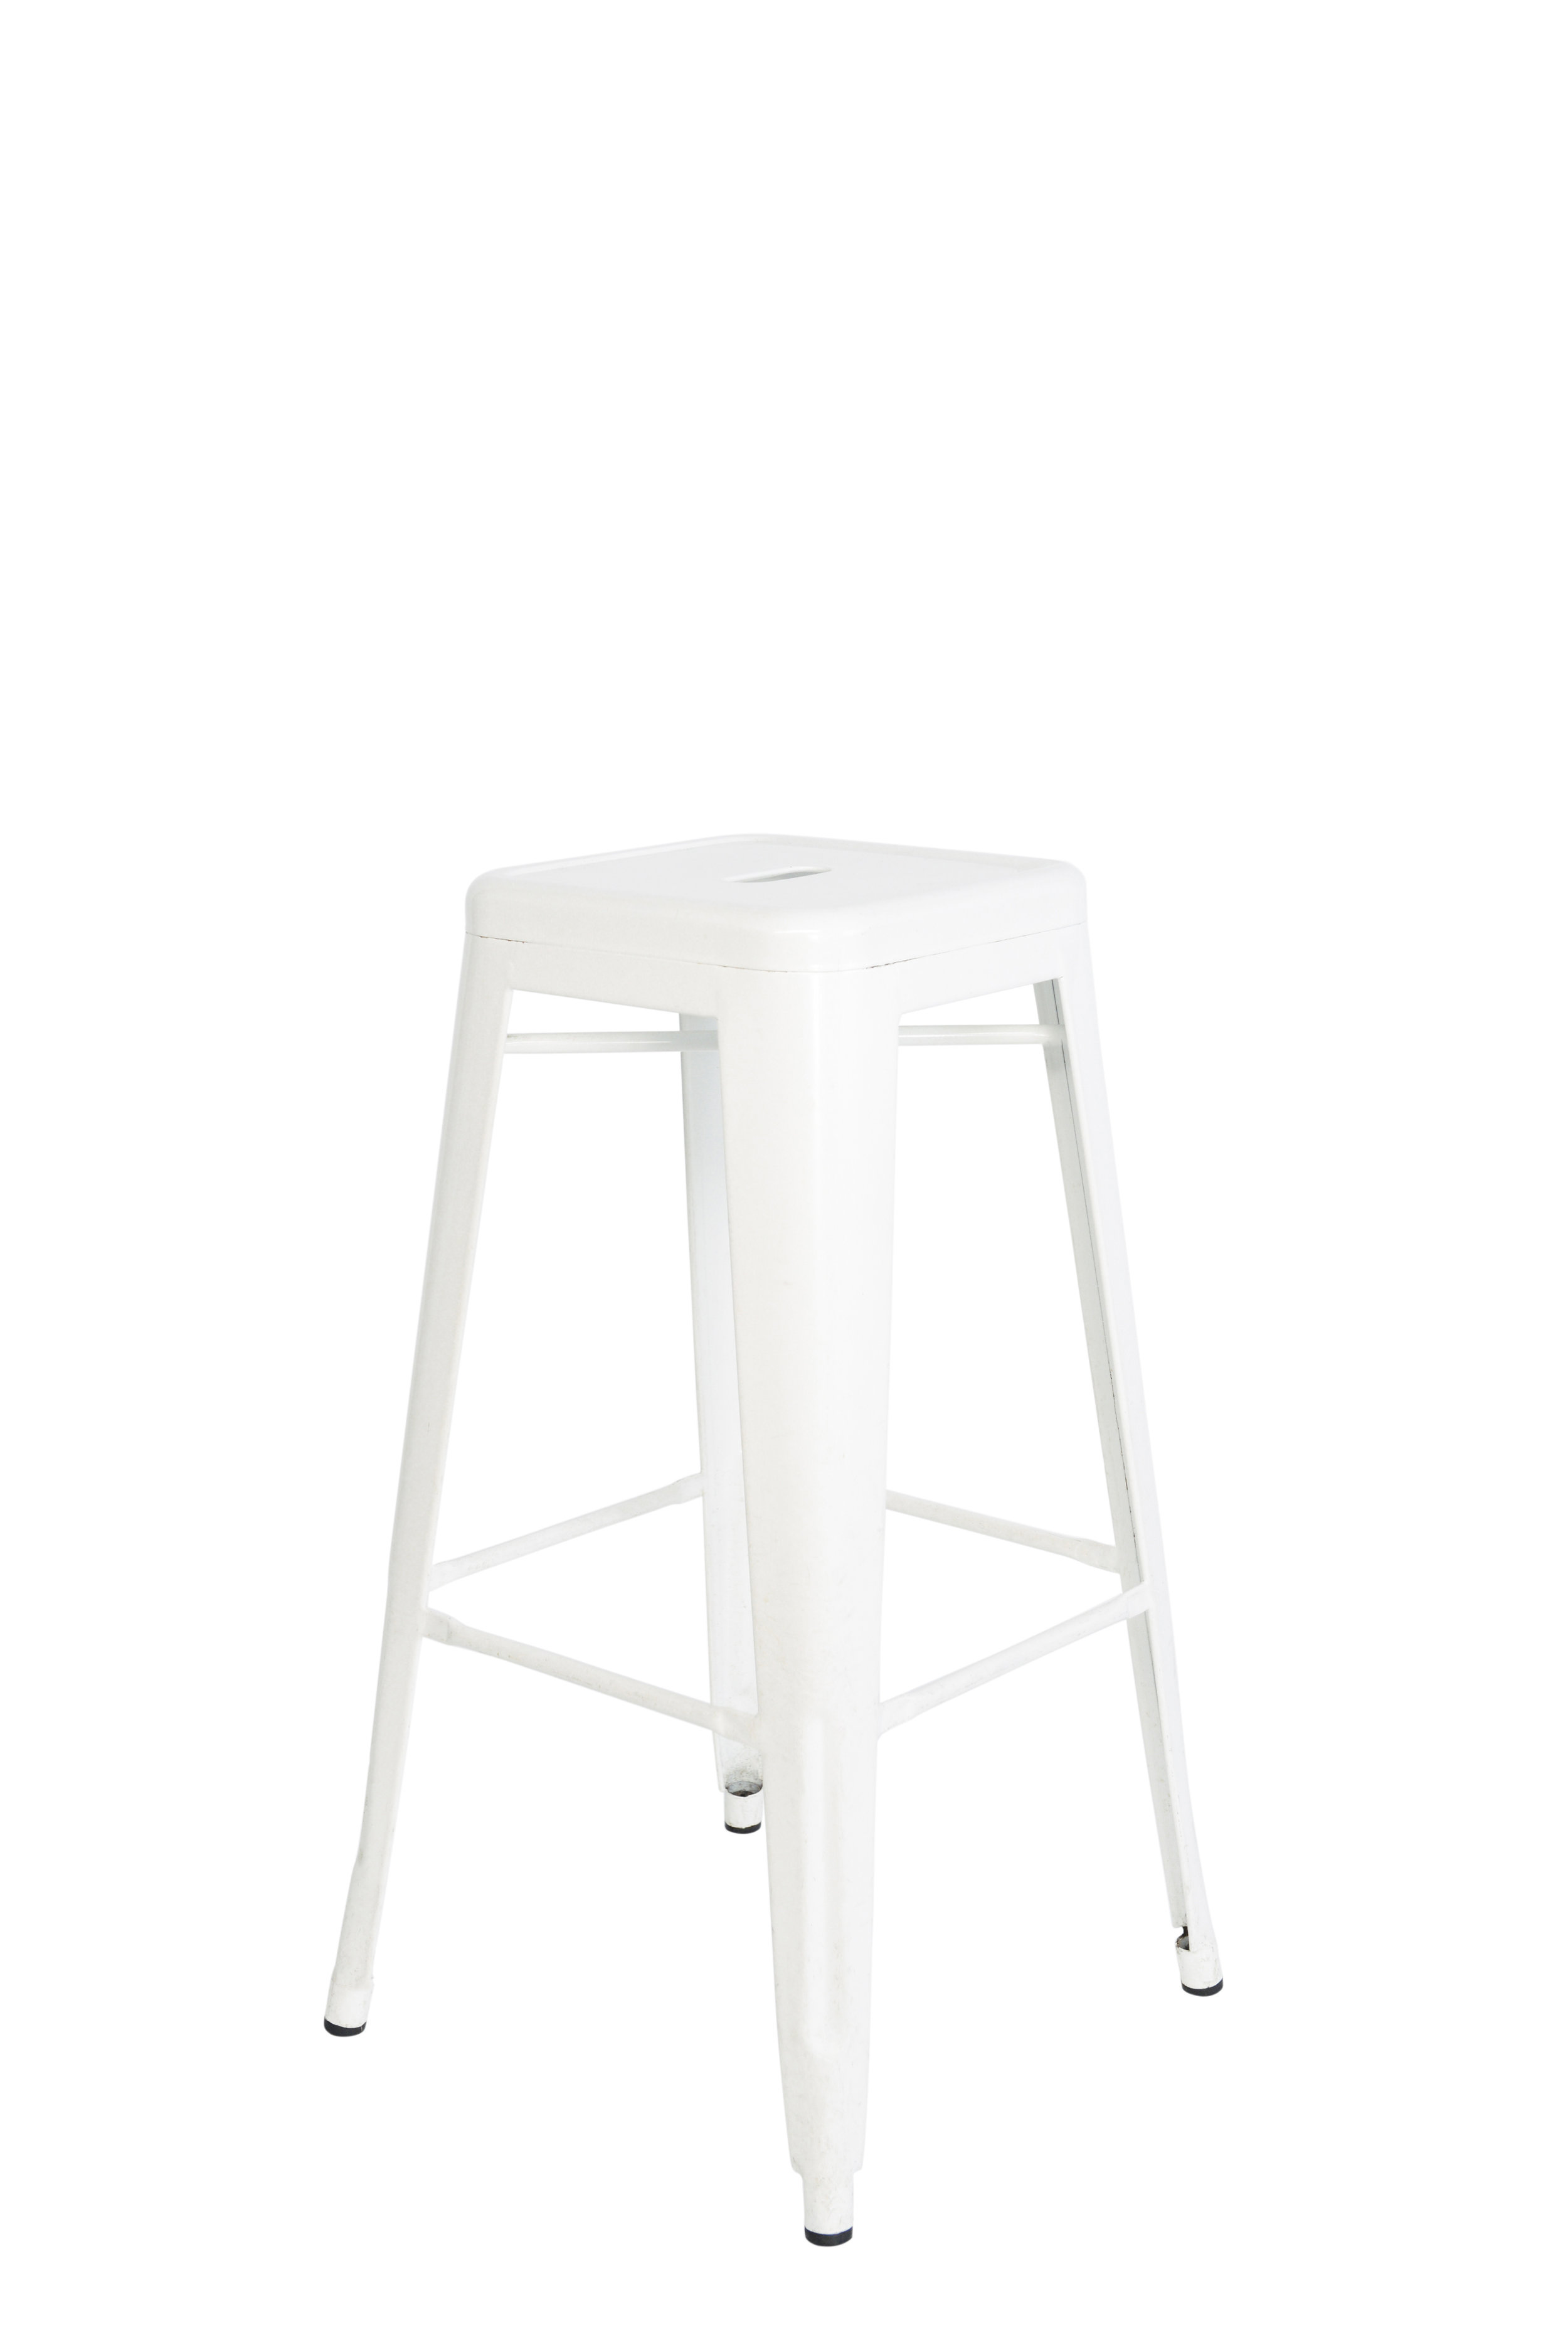 White metal stools qty. 8